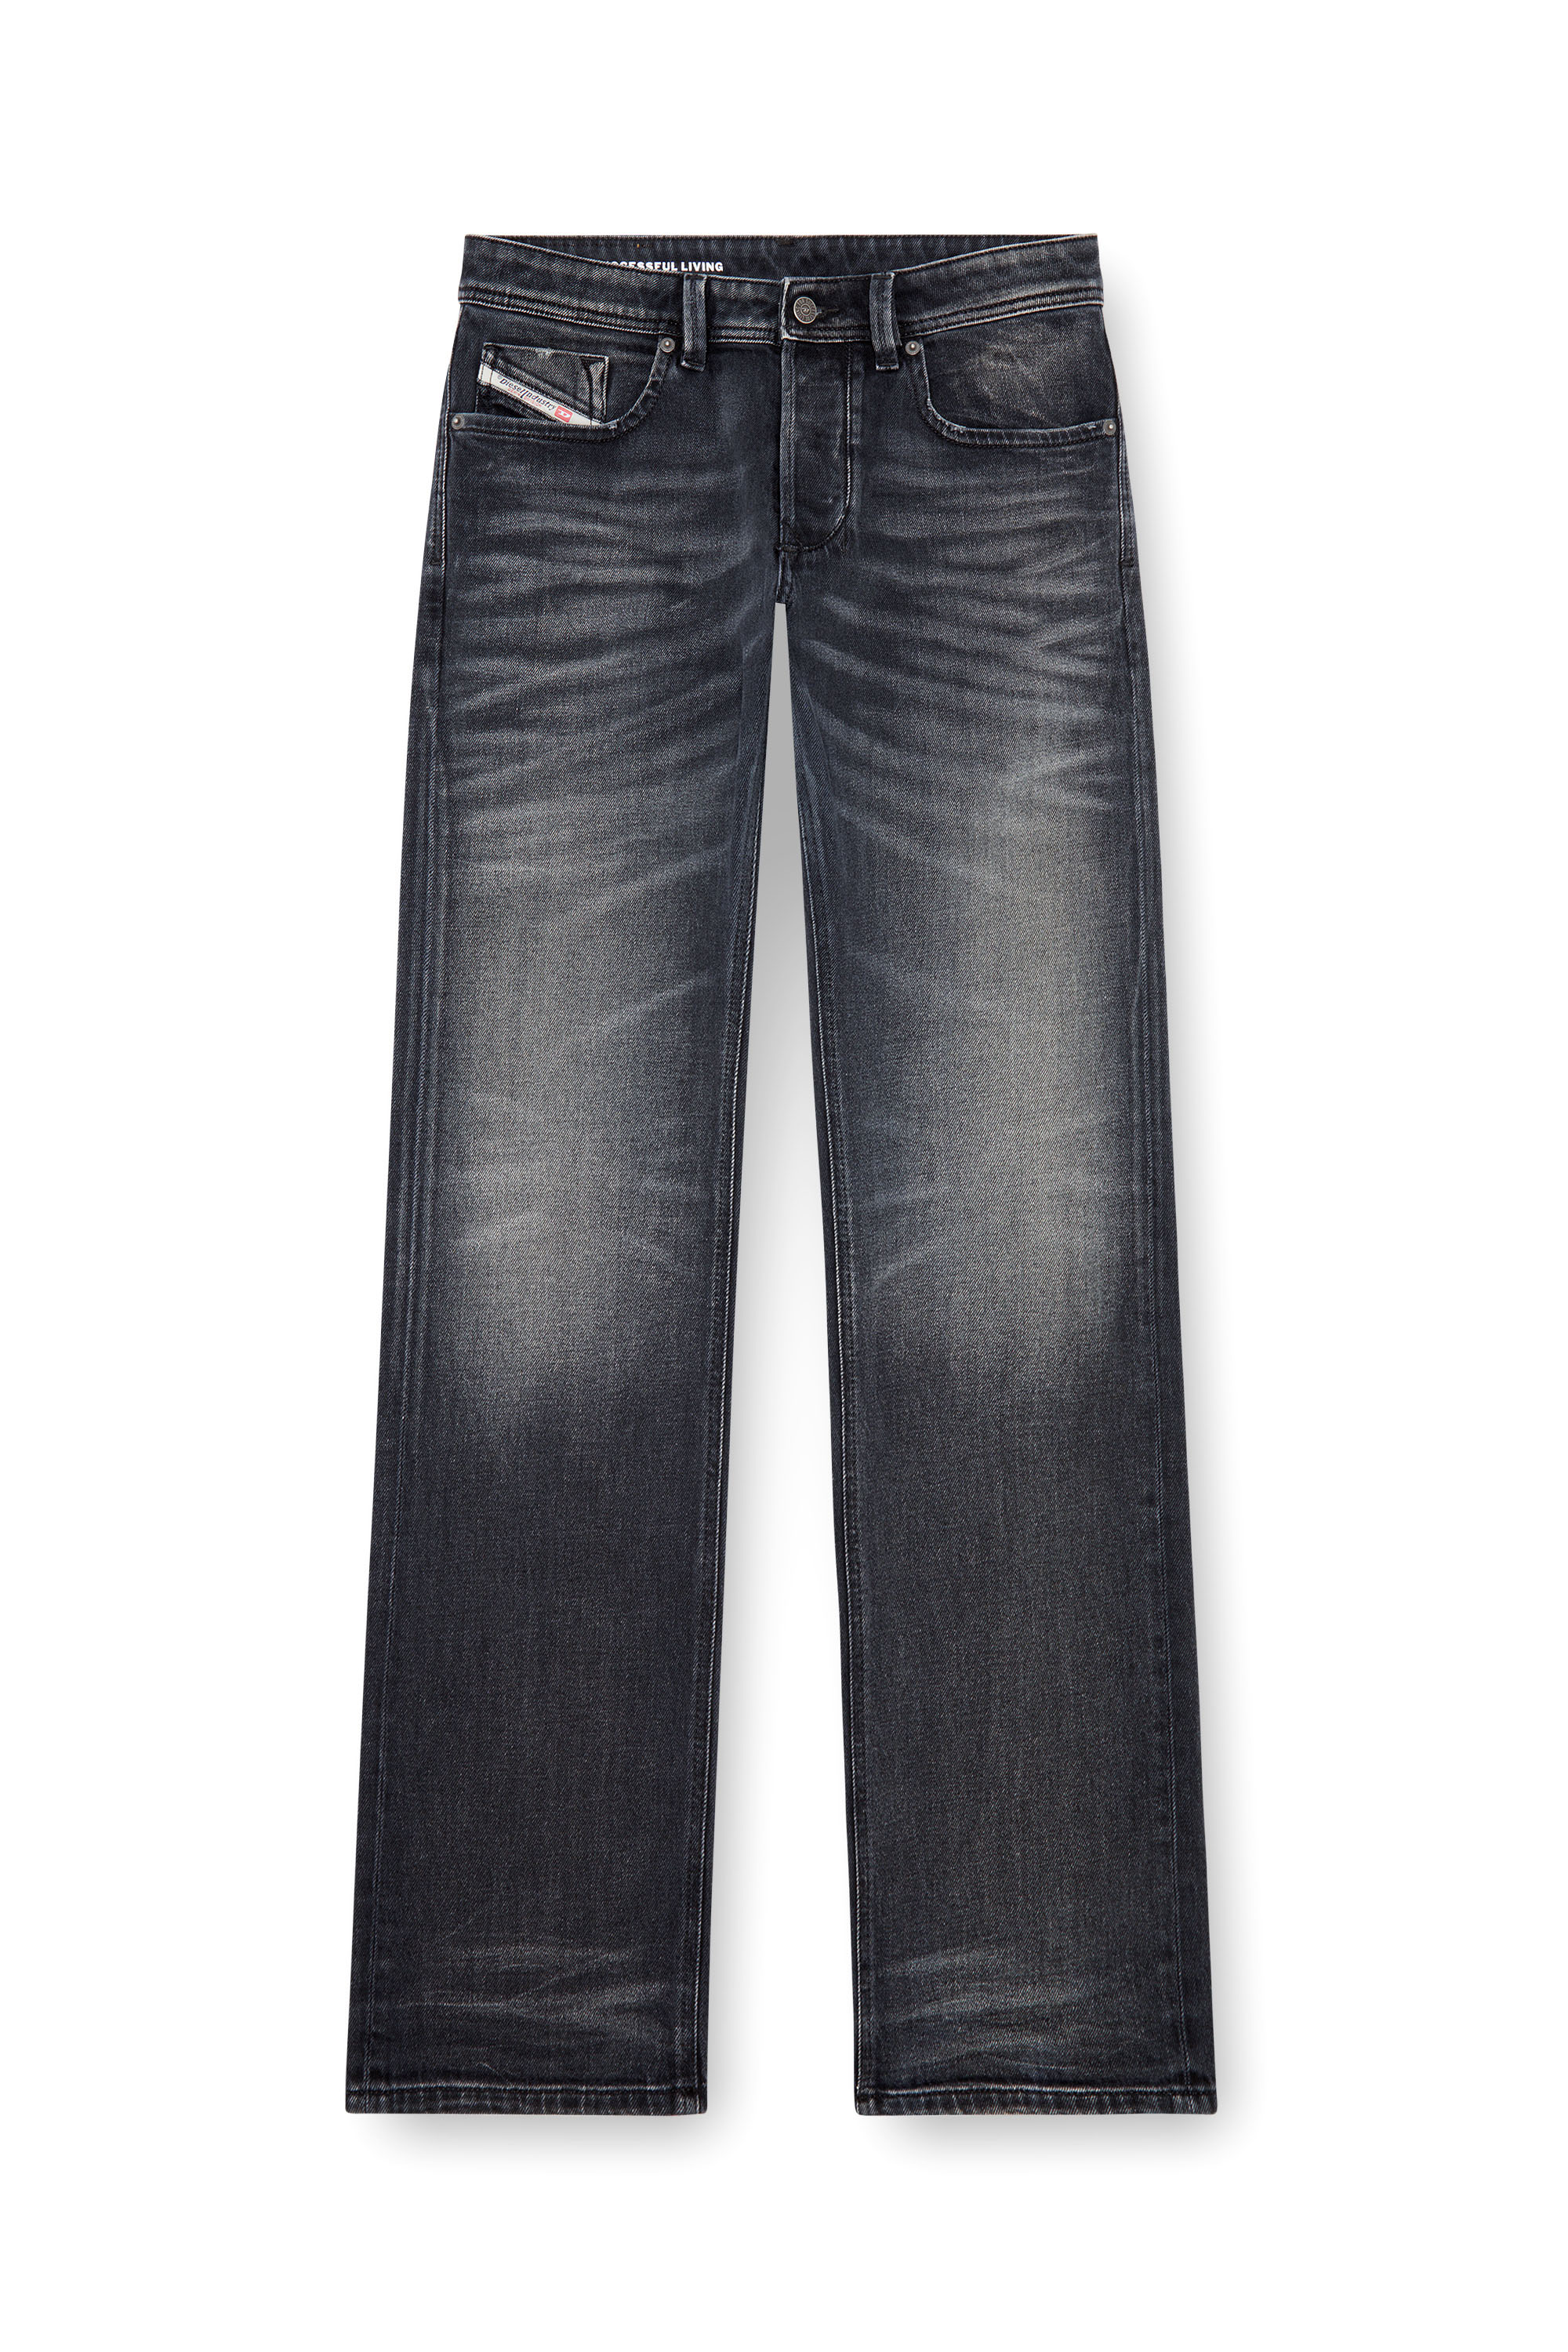 Diesel - Homme Straight Jeans 1985 Larkee 09J65, Noir/Gris foncé - Image 3